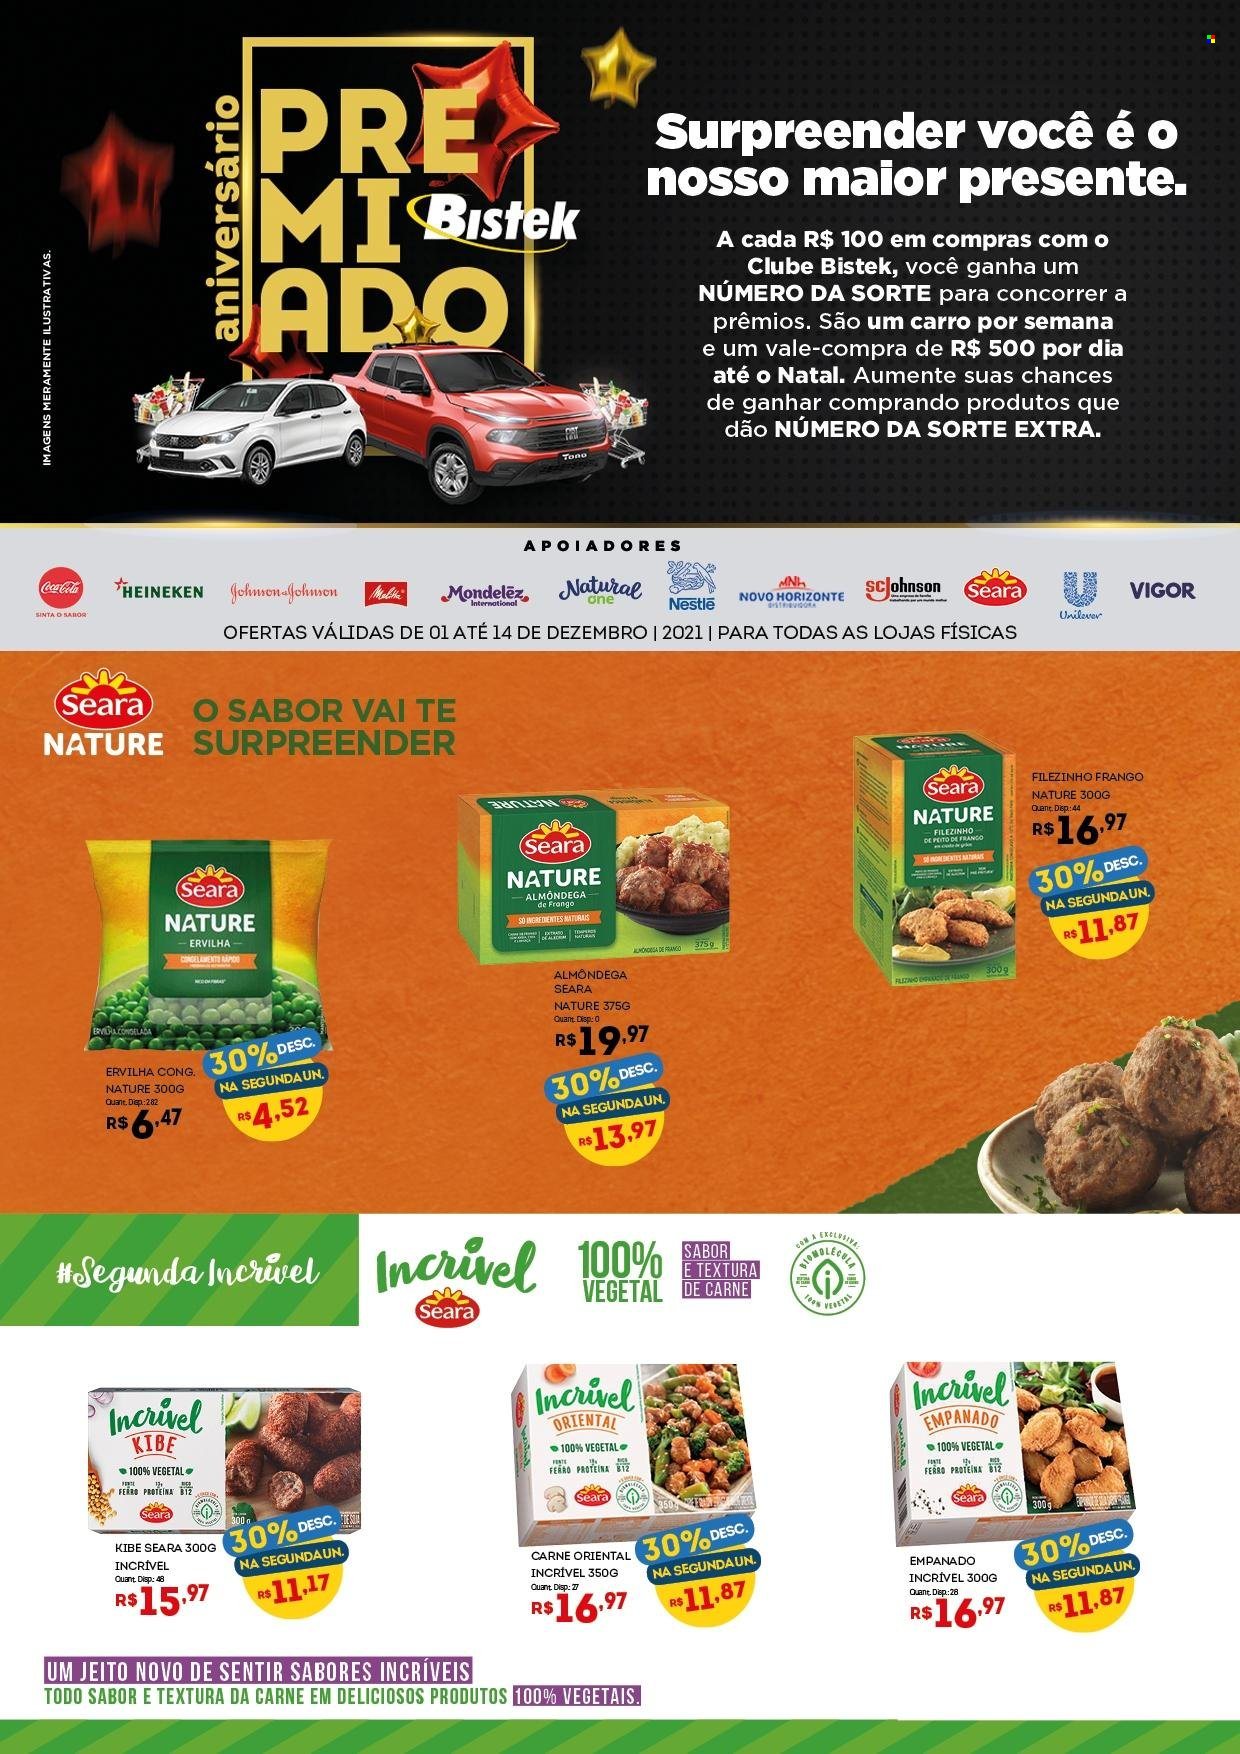 thumbnail - Folheto Bistek Supermercados - 01/12/2021 - 14/12/2021 - Produtos em promoção - Heineken, ervilha, filé de frango, kibe, Vigor, Nestlé, Coca Cola. Página 1.